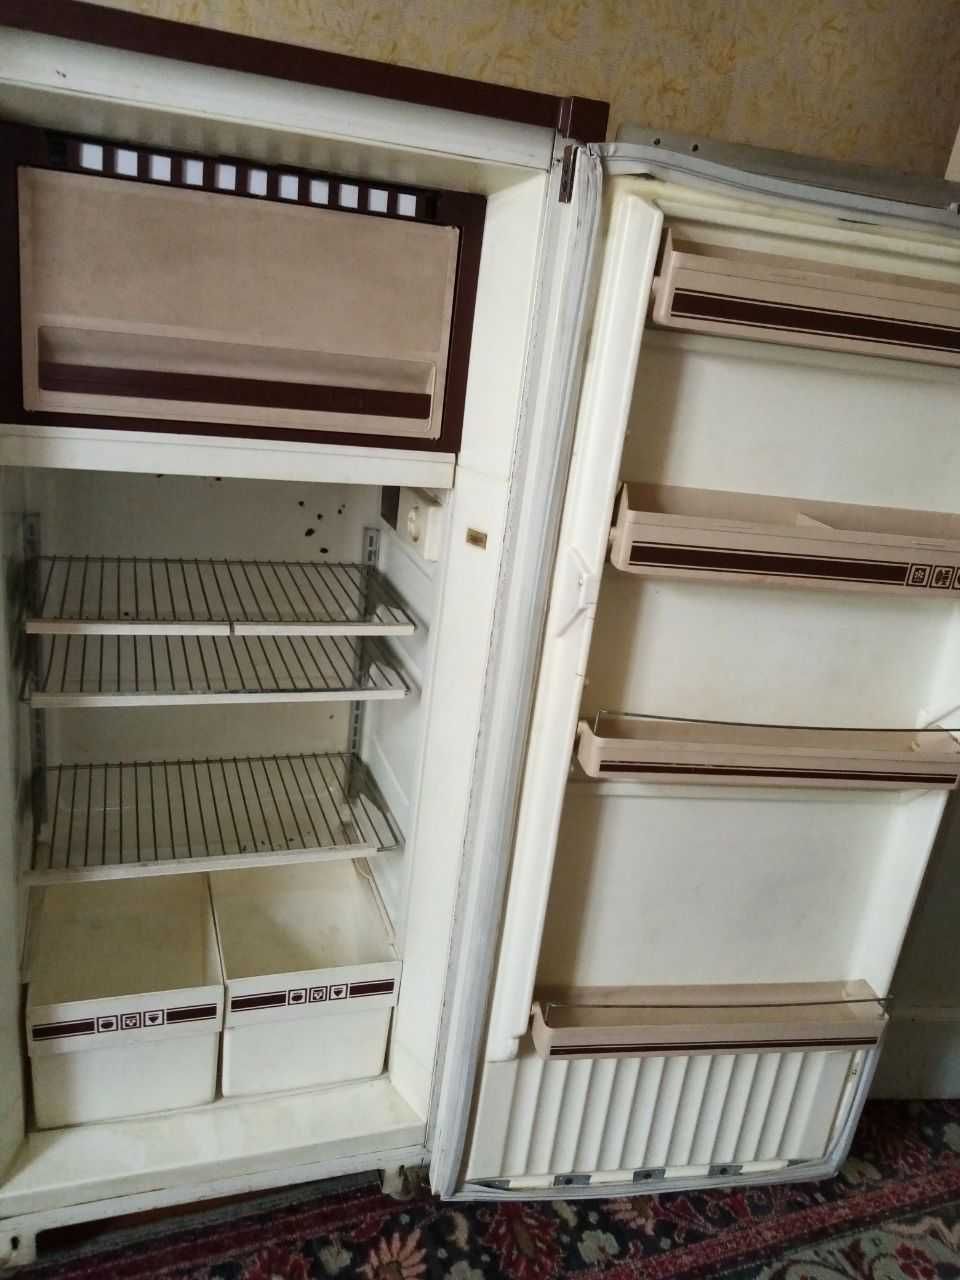 Продаётся холодильник Орск-8